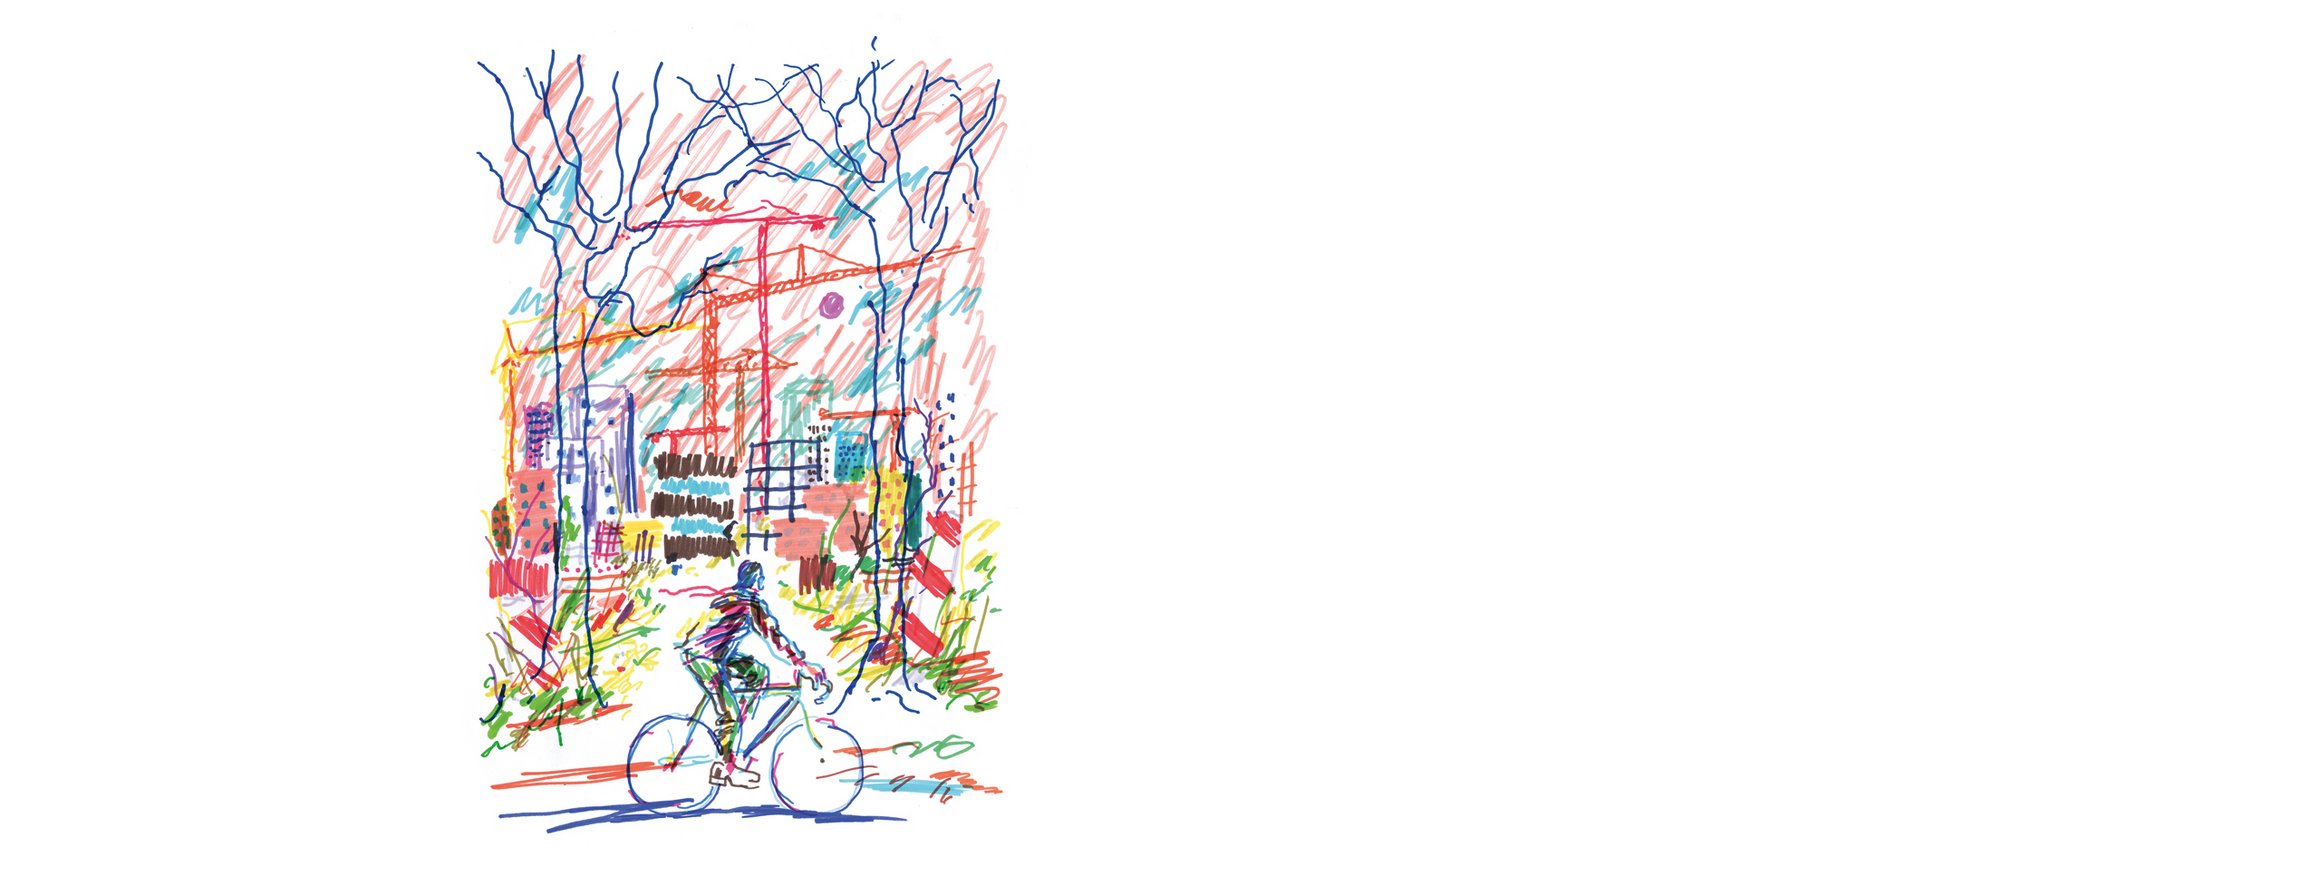 Die Illustration zeigt einen Radfahrer vor einer Stadtkulisse mit Häusern, Baukränen und Bäumen